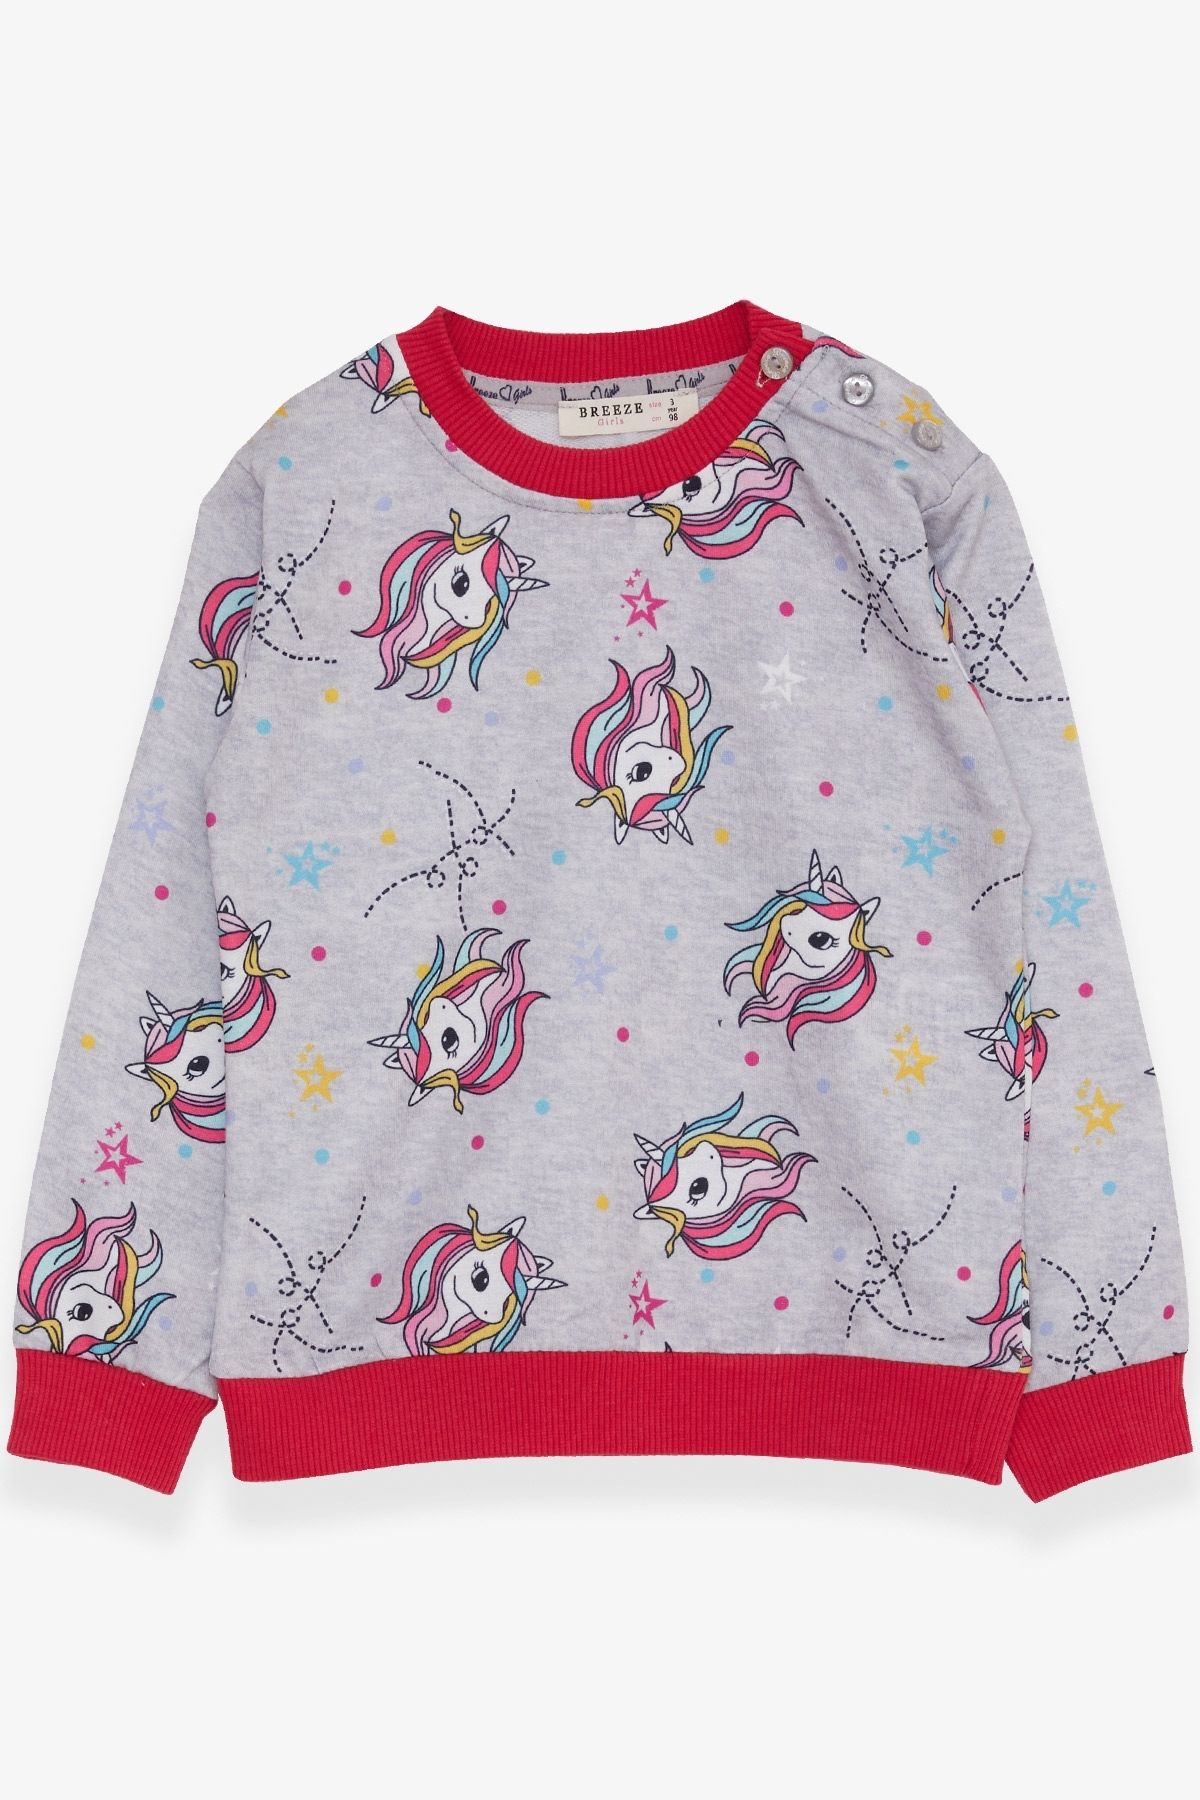 Breeze Kız Çocuk Sweatshirt Unicorn Desenli 1.5-5 Yaş, Açık Gri Melanj